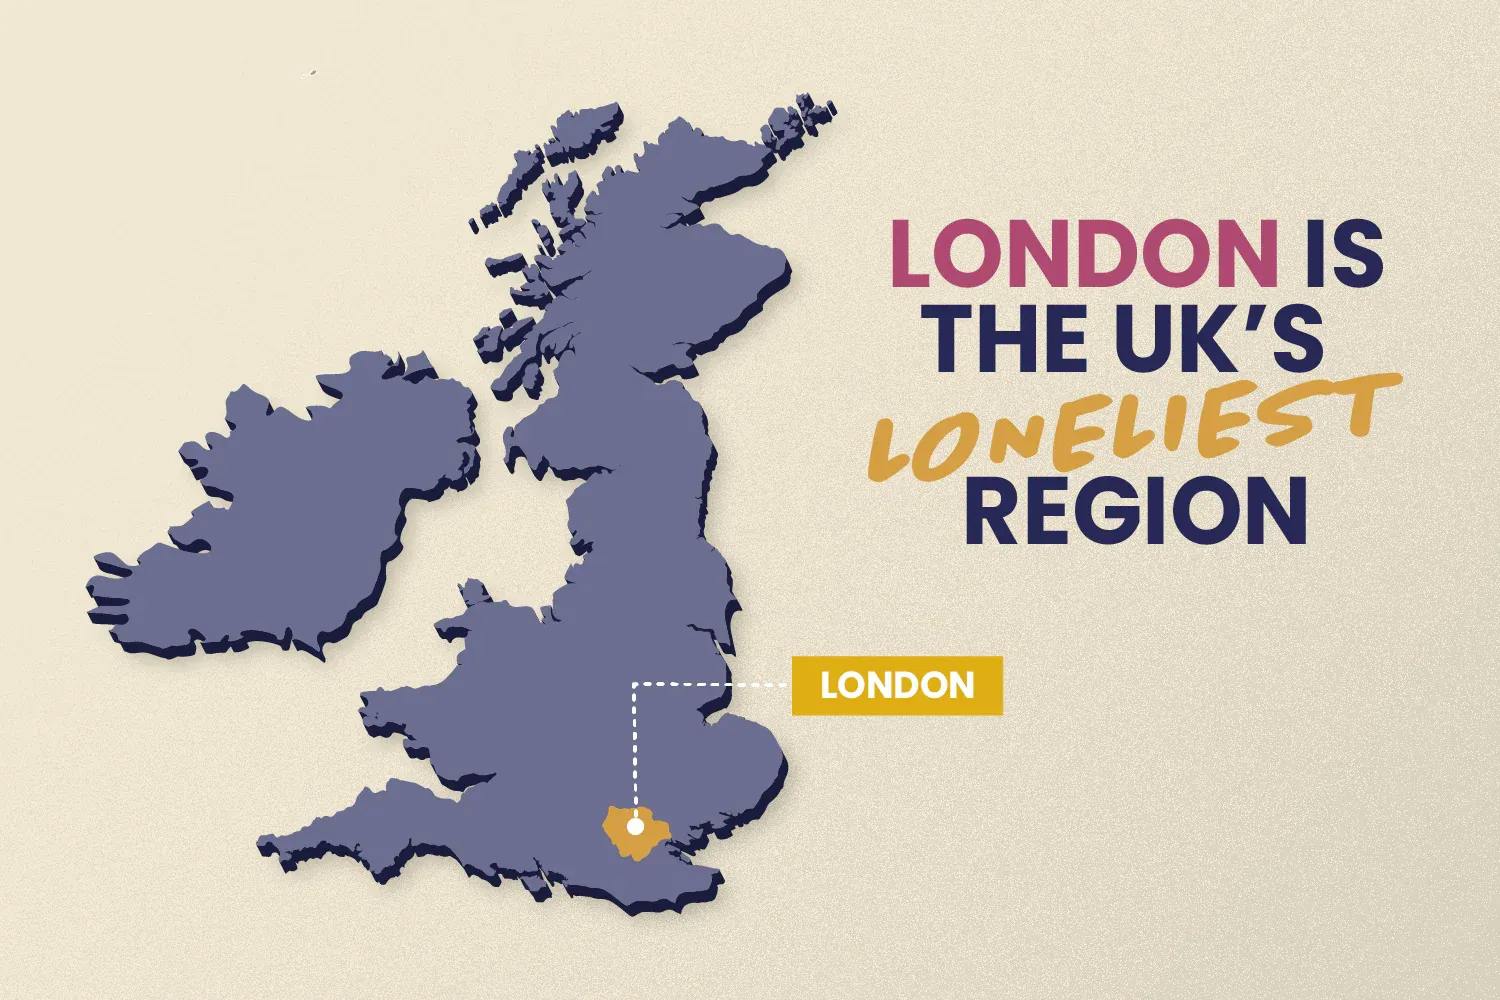 London is the UK's loneliest region